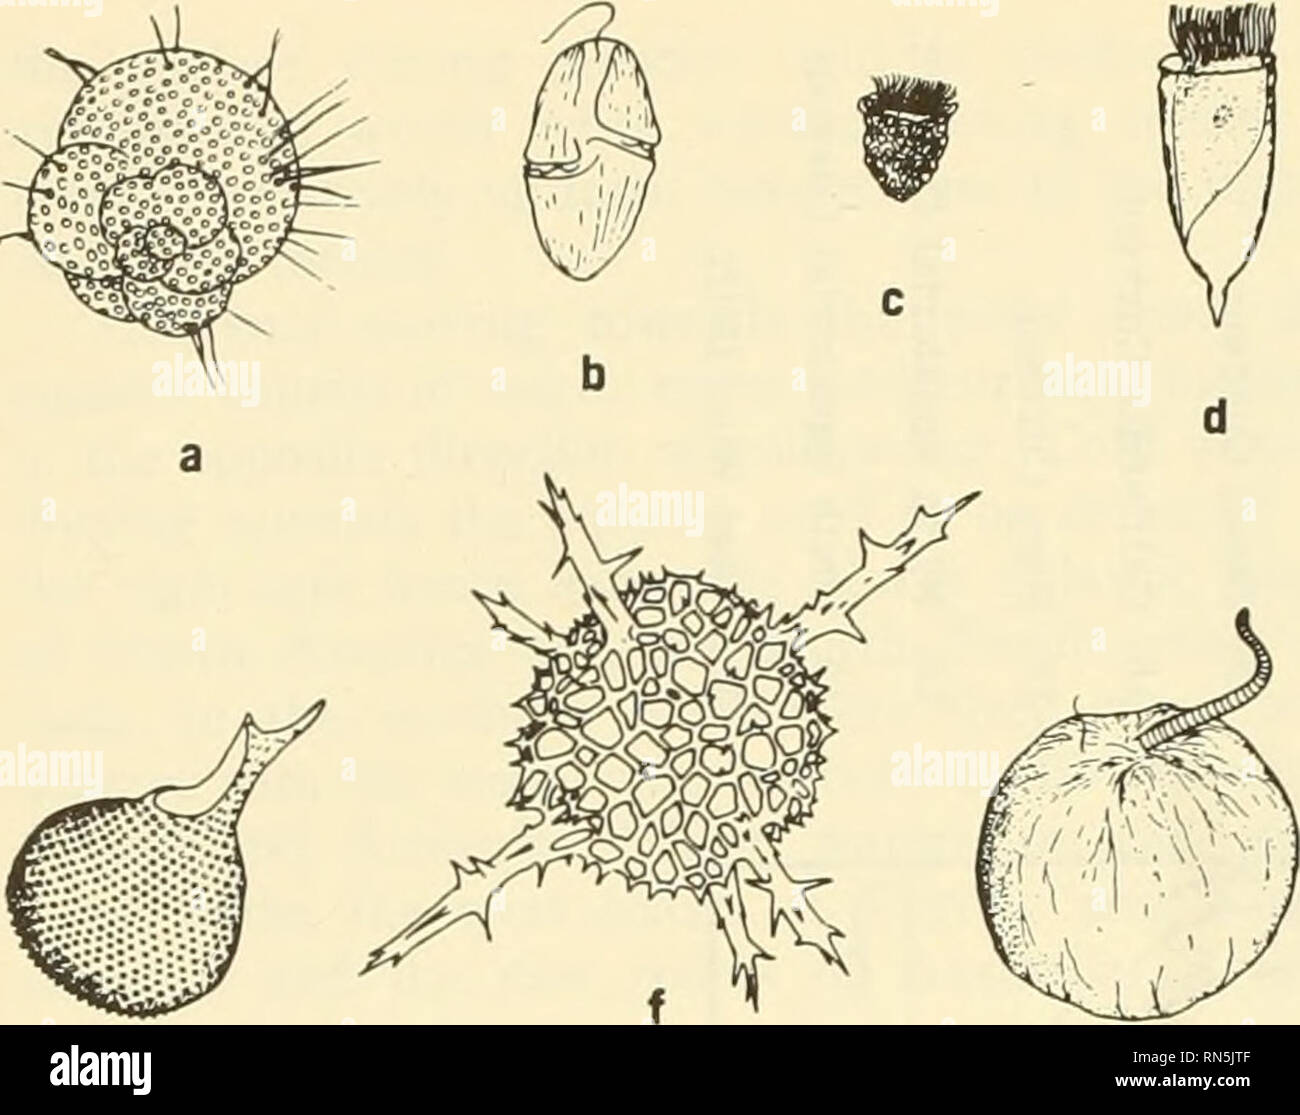 . L'écologie animale. L'écologie animale. FIG. 28-3 (holoplankton caractéristique e^ Sverdrup o/. 1942). (A) Les protozoaires : a) foramlnlfera Globigerina, b) dinoflagellé Gymnodinium, tintinnid Stenosomella c), d), e) tintinnid Flavella Proioeysfh radiolaires radiolaires, f) un autre, g) de la CNP de dinoflagellés^Vuco. montants pour les coquilles de mollusques, les squelettes des coraux, certains protozoaires et les vers, certaines algues, les autres organismes, et peut être précipité hors de l'eau par des bactéries. Le silicium est requis par les éponges, certains protozoaires, et le phytoplancton de diatomées. Ces sels continuer à faire du vélo à travers l'ecosyst Banque D'Images